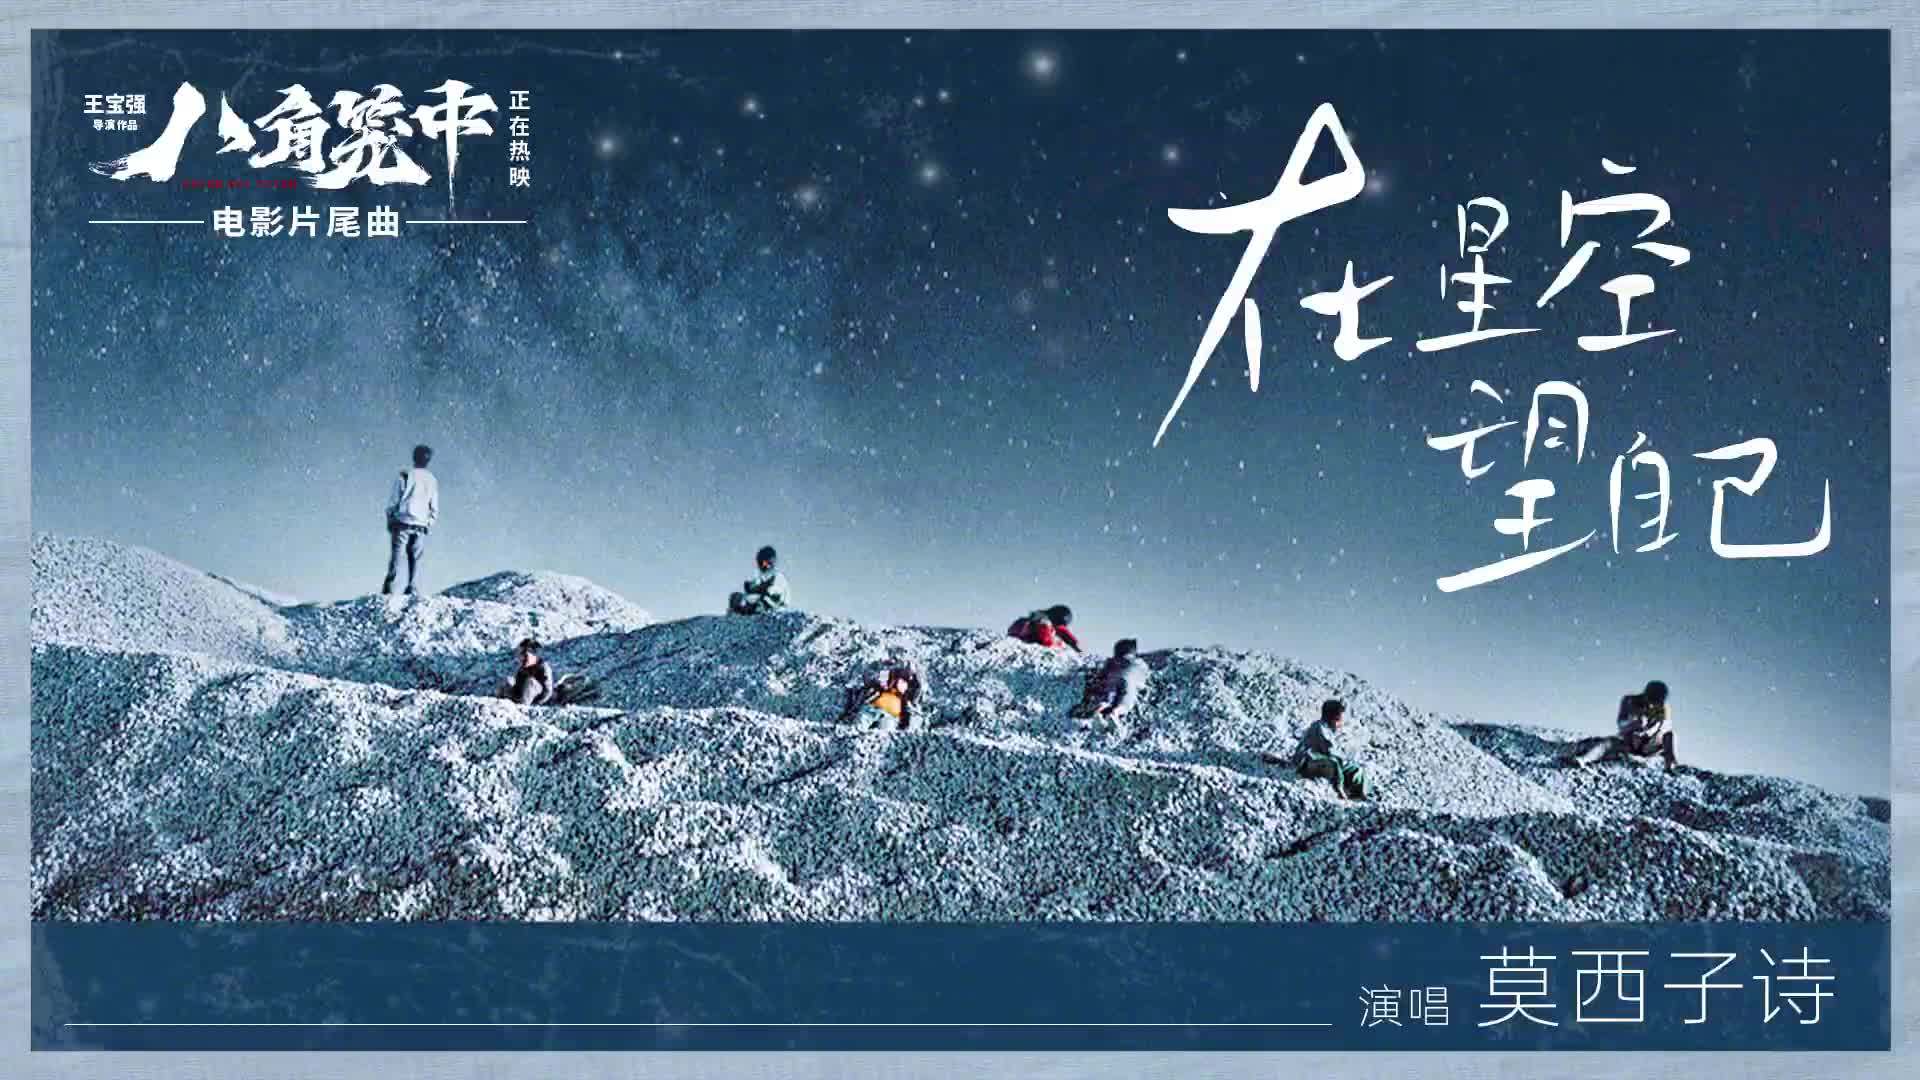 现实题材电影《八角笼中》发布片尾曲《在星空望自己》MV